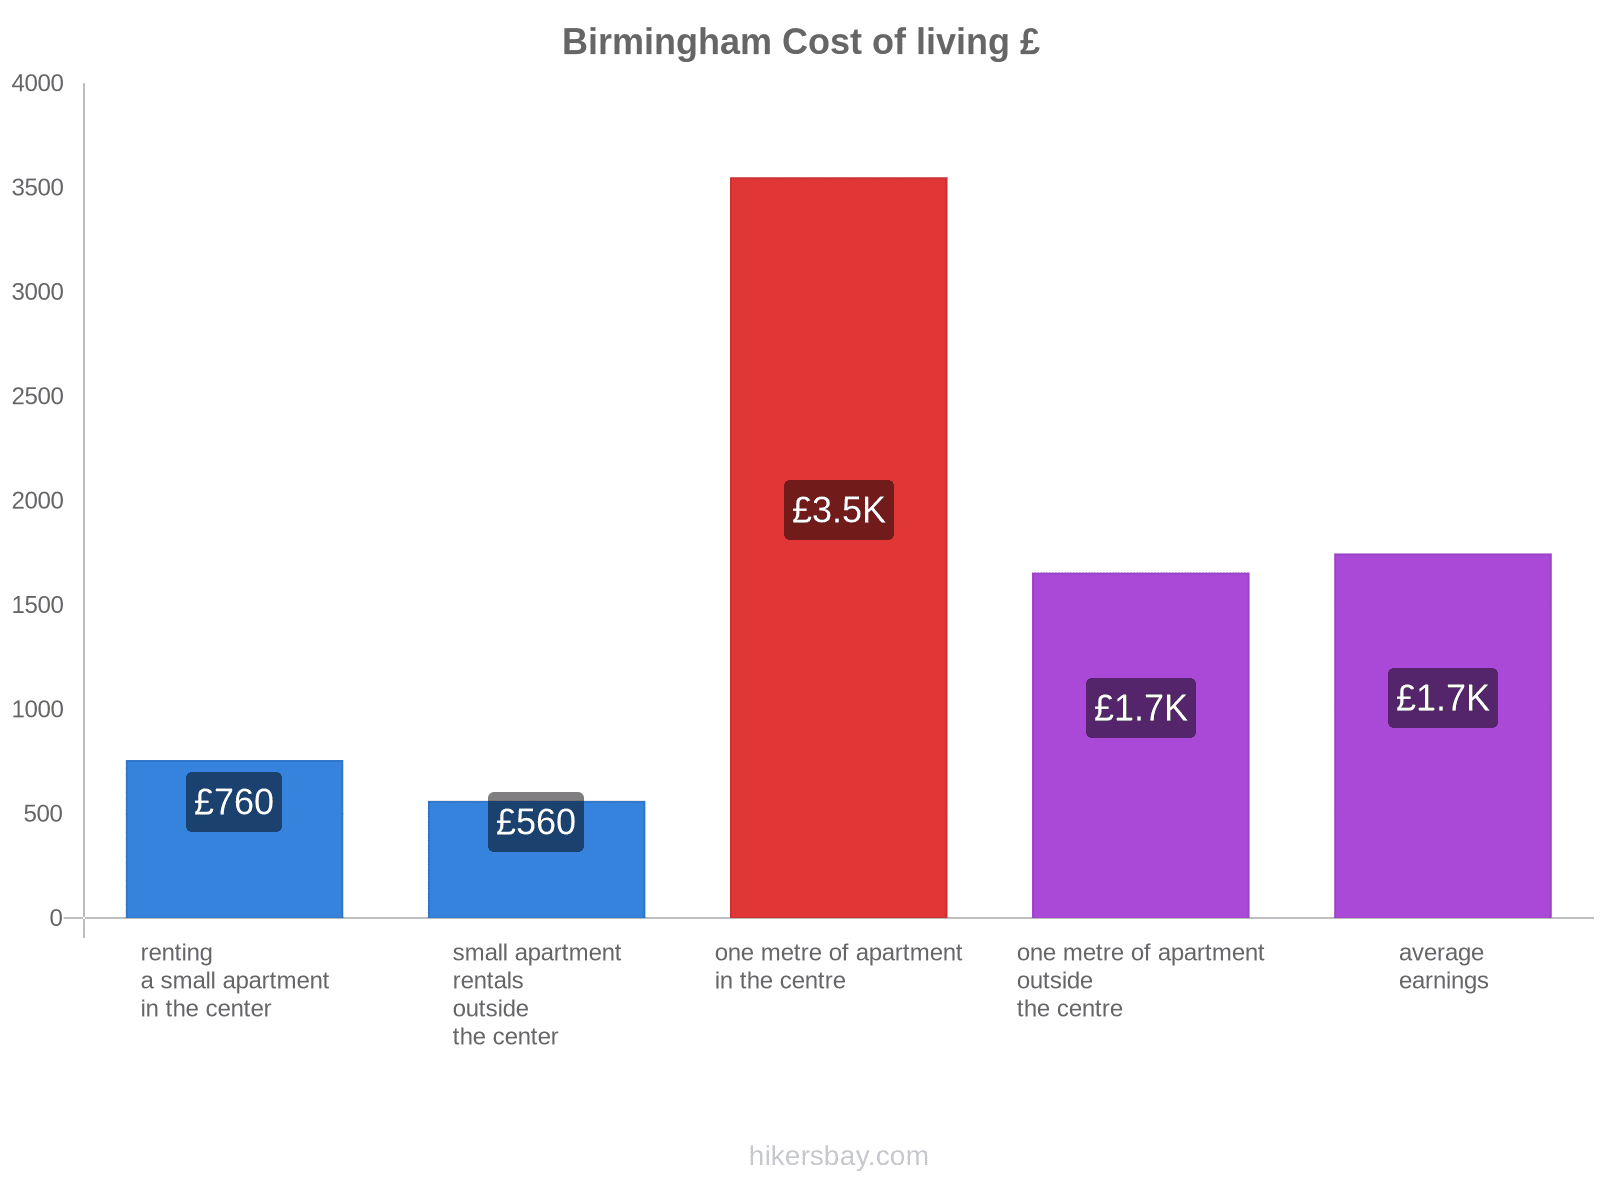 Birmingham cost of living hikersbay.com